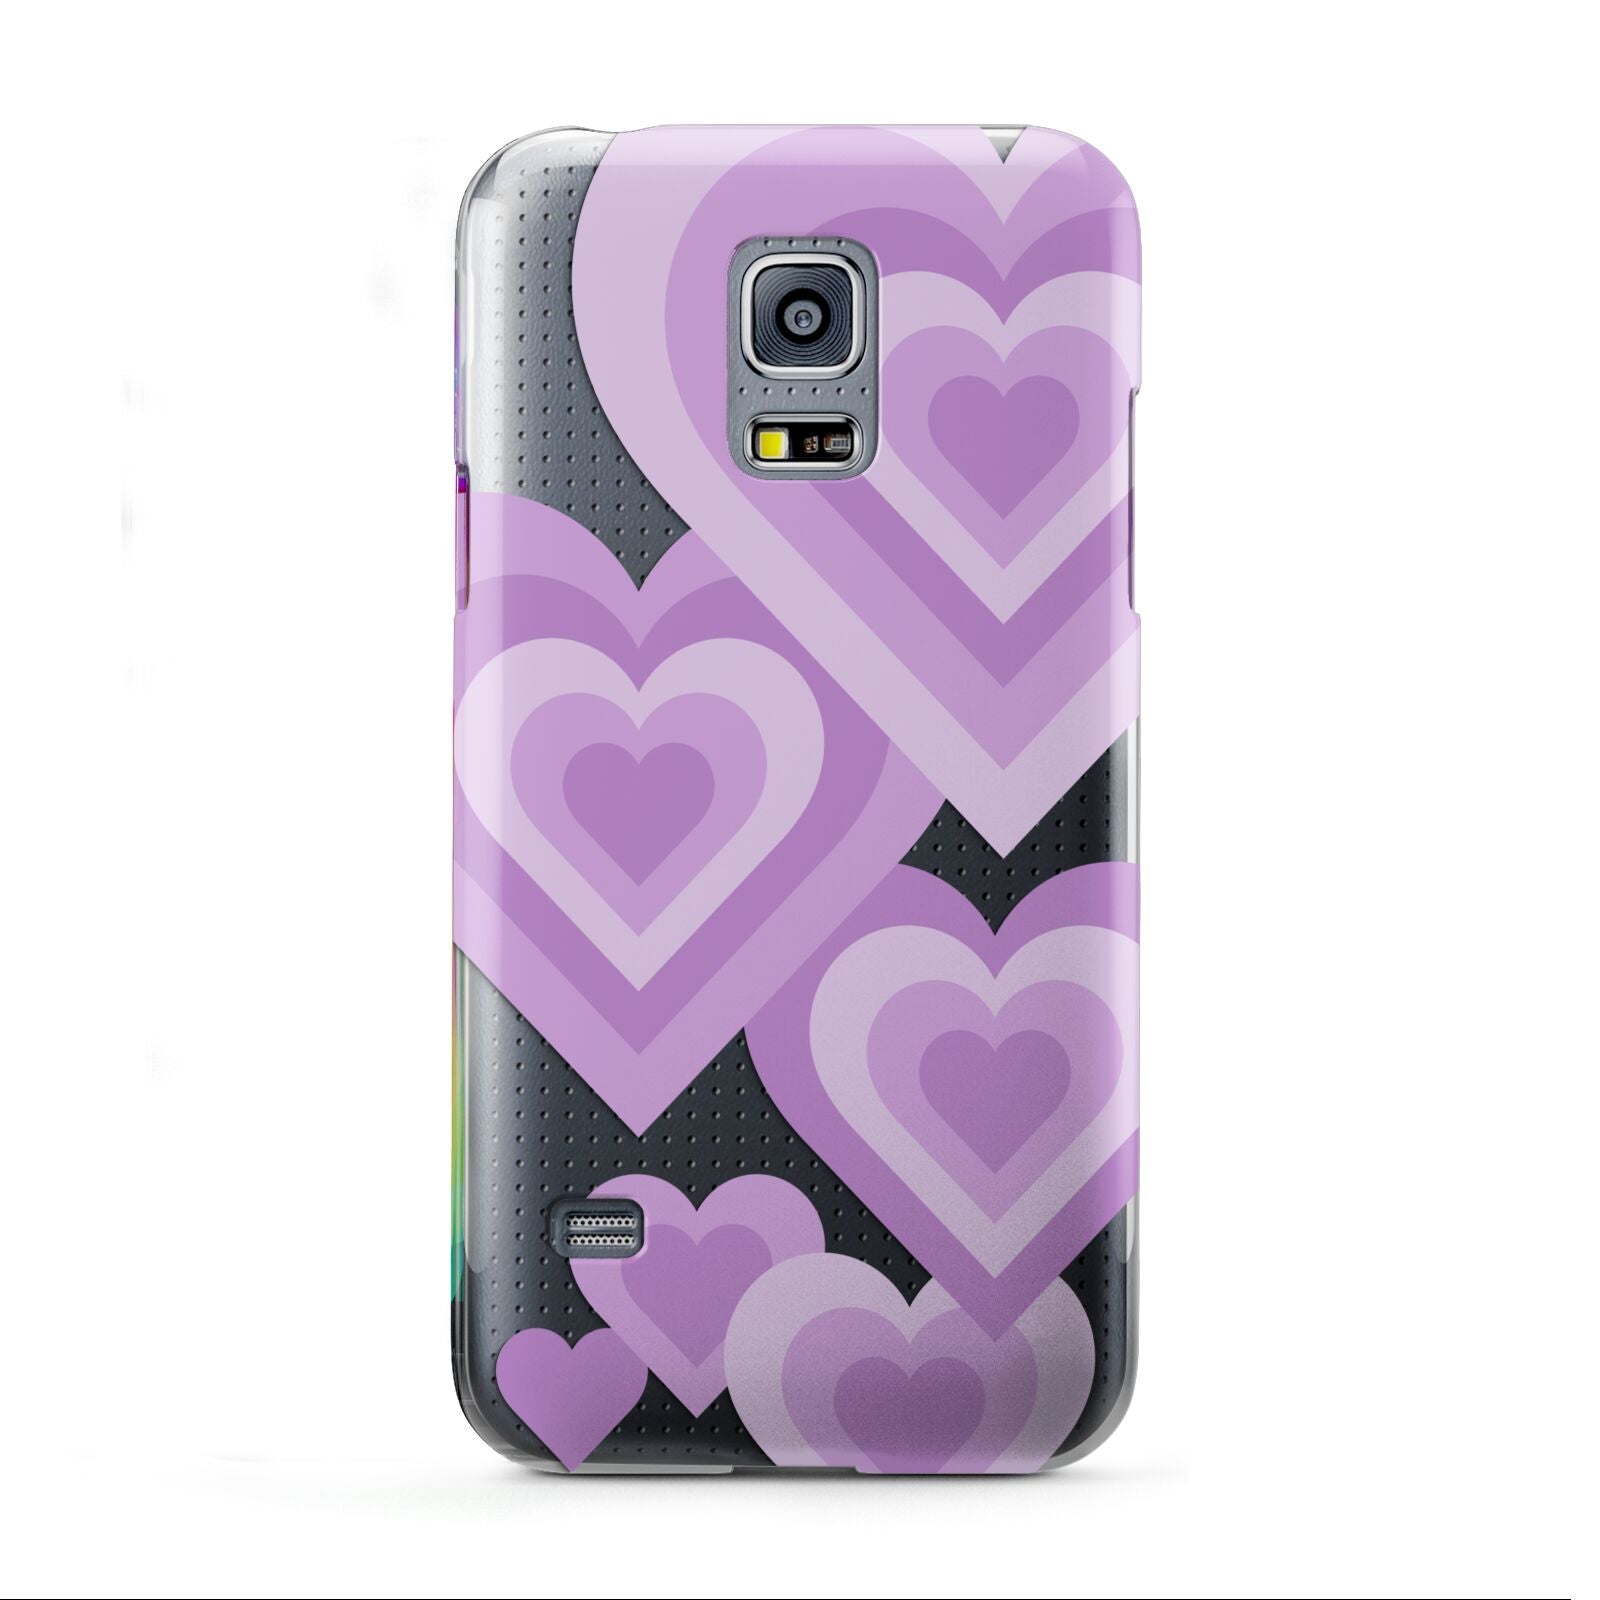 Multi Heart Samsung Galaxy S5 Mini Case